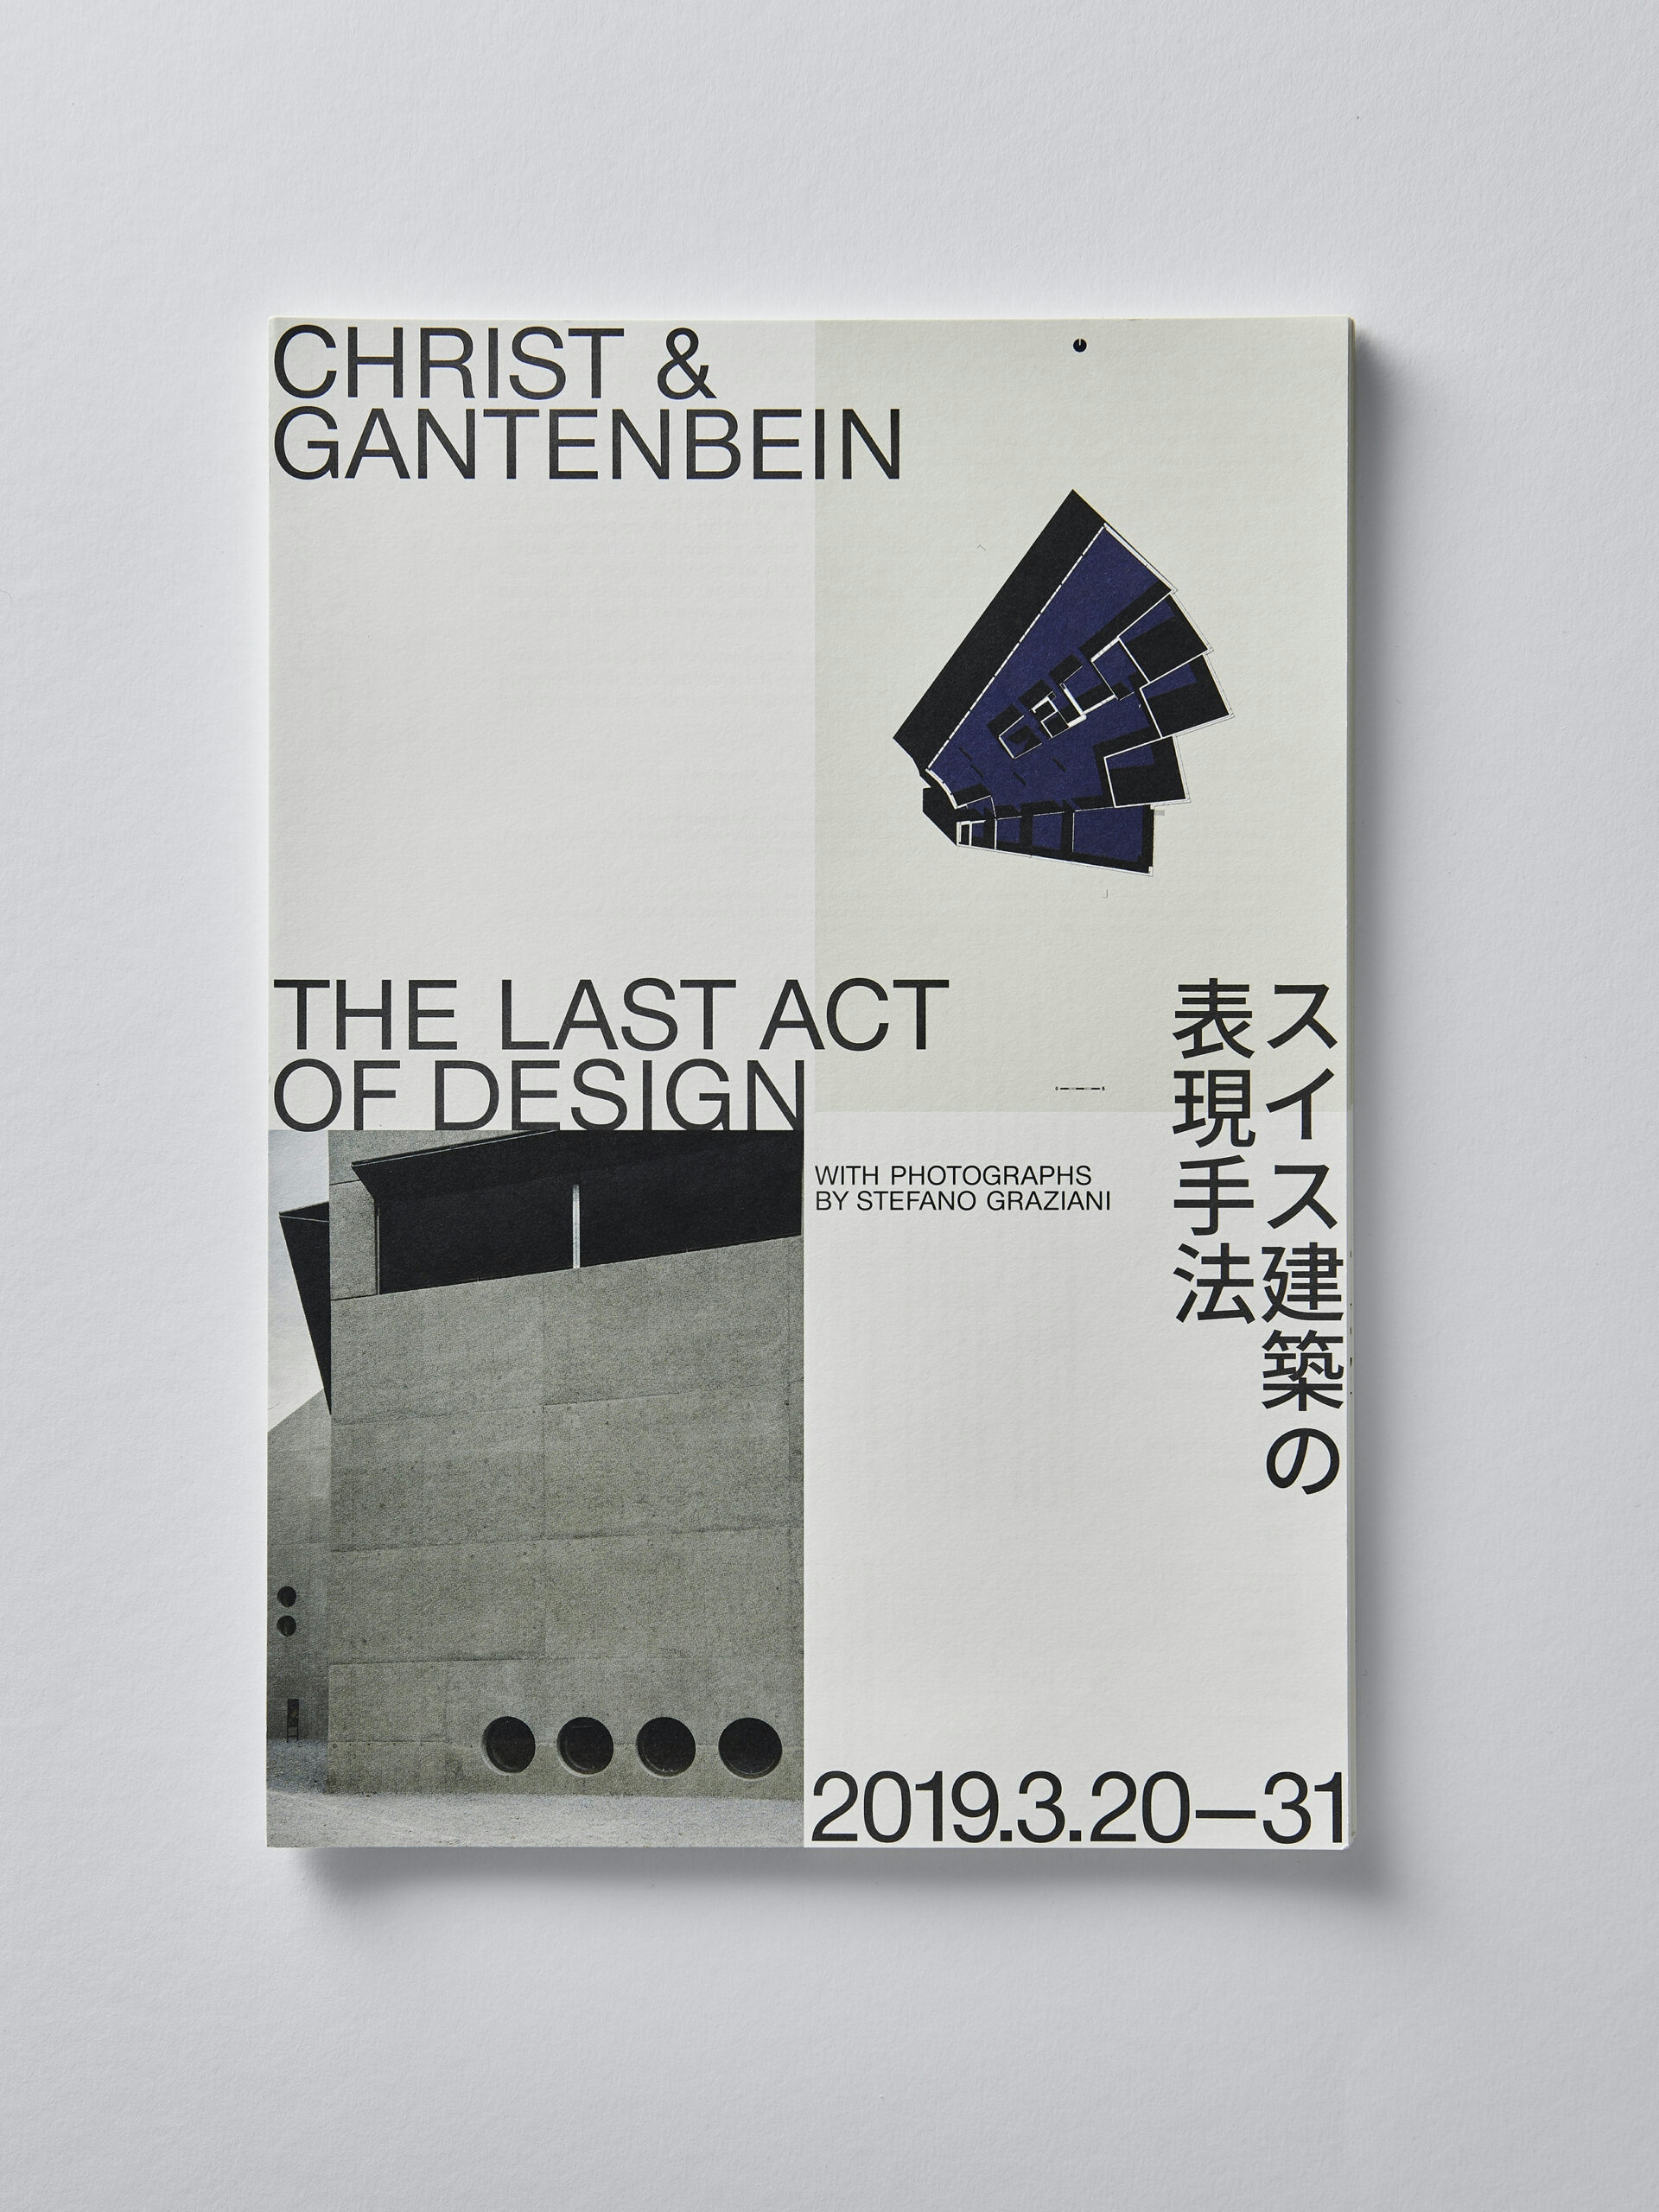 Christ & Gantenbein – The Last Act of Design flyer front